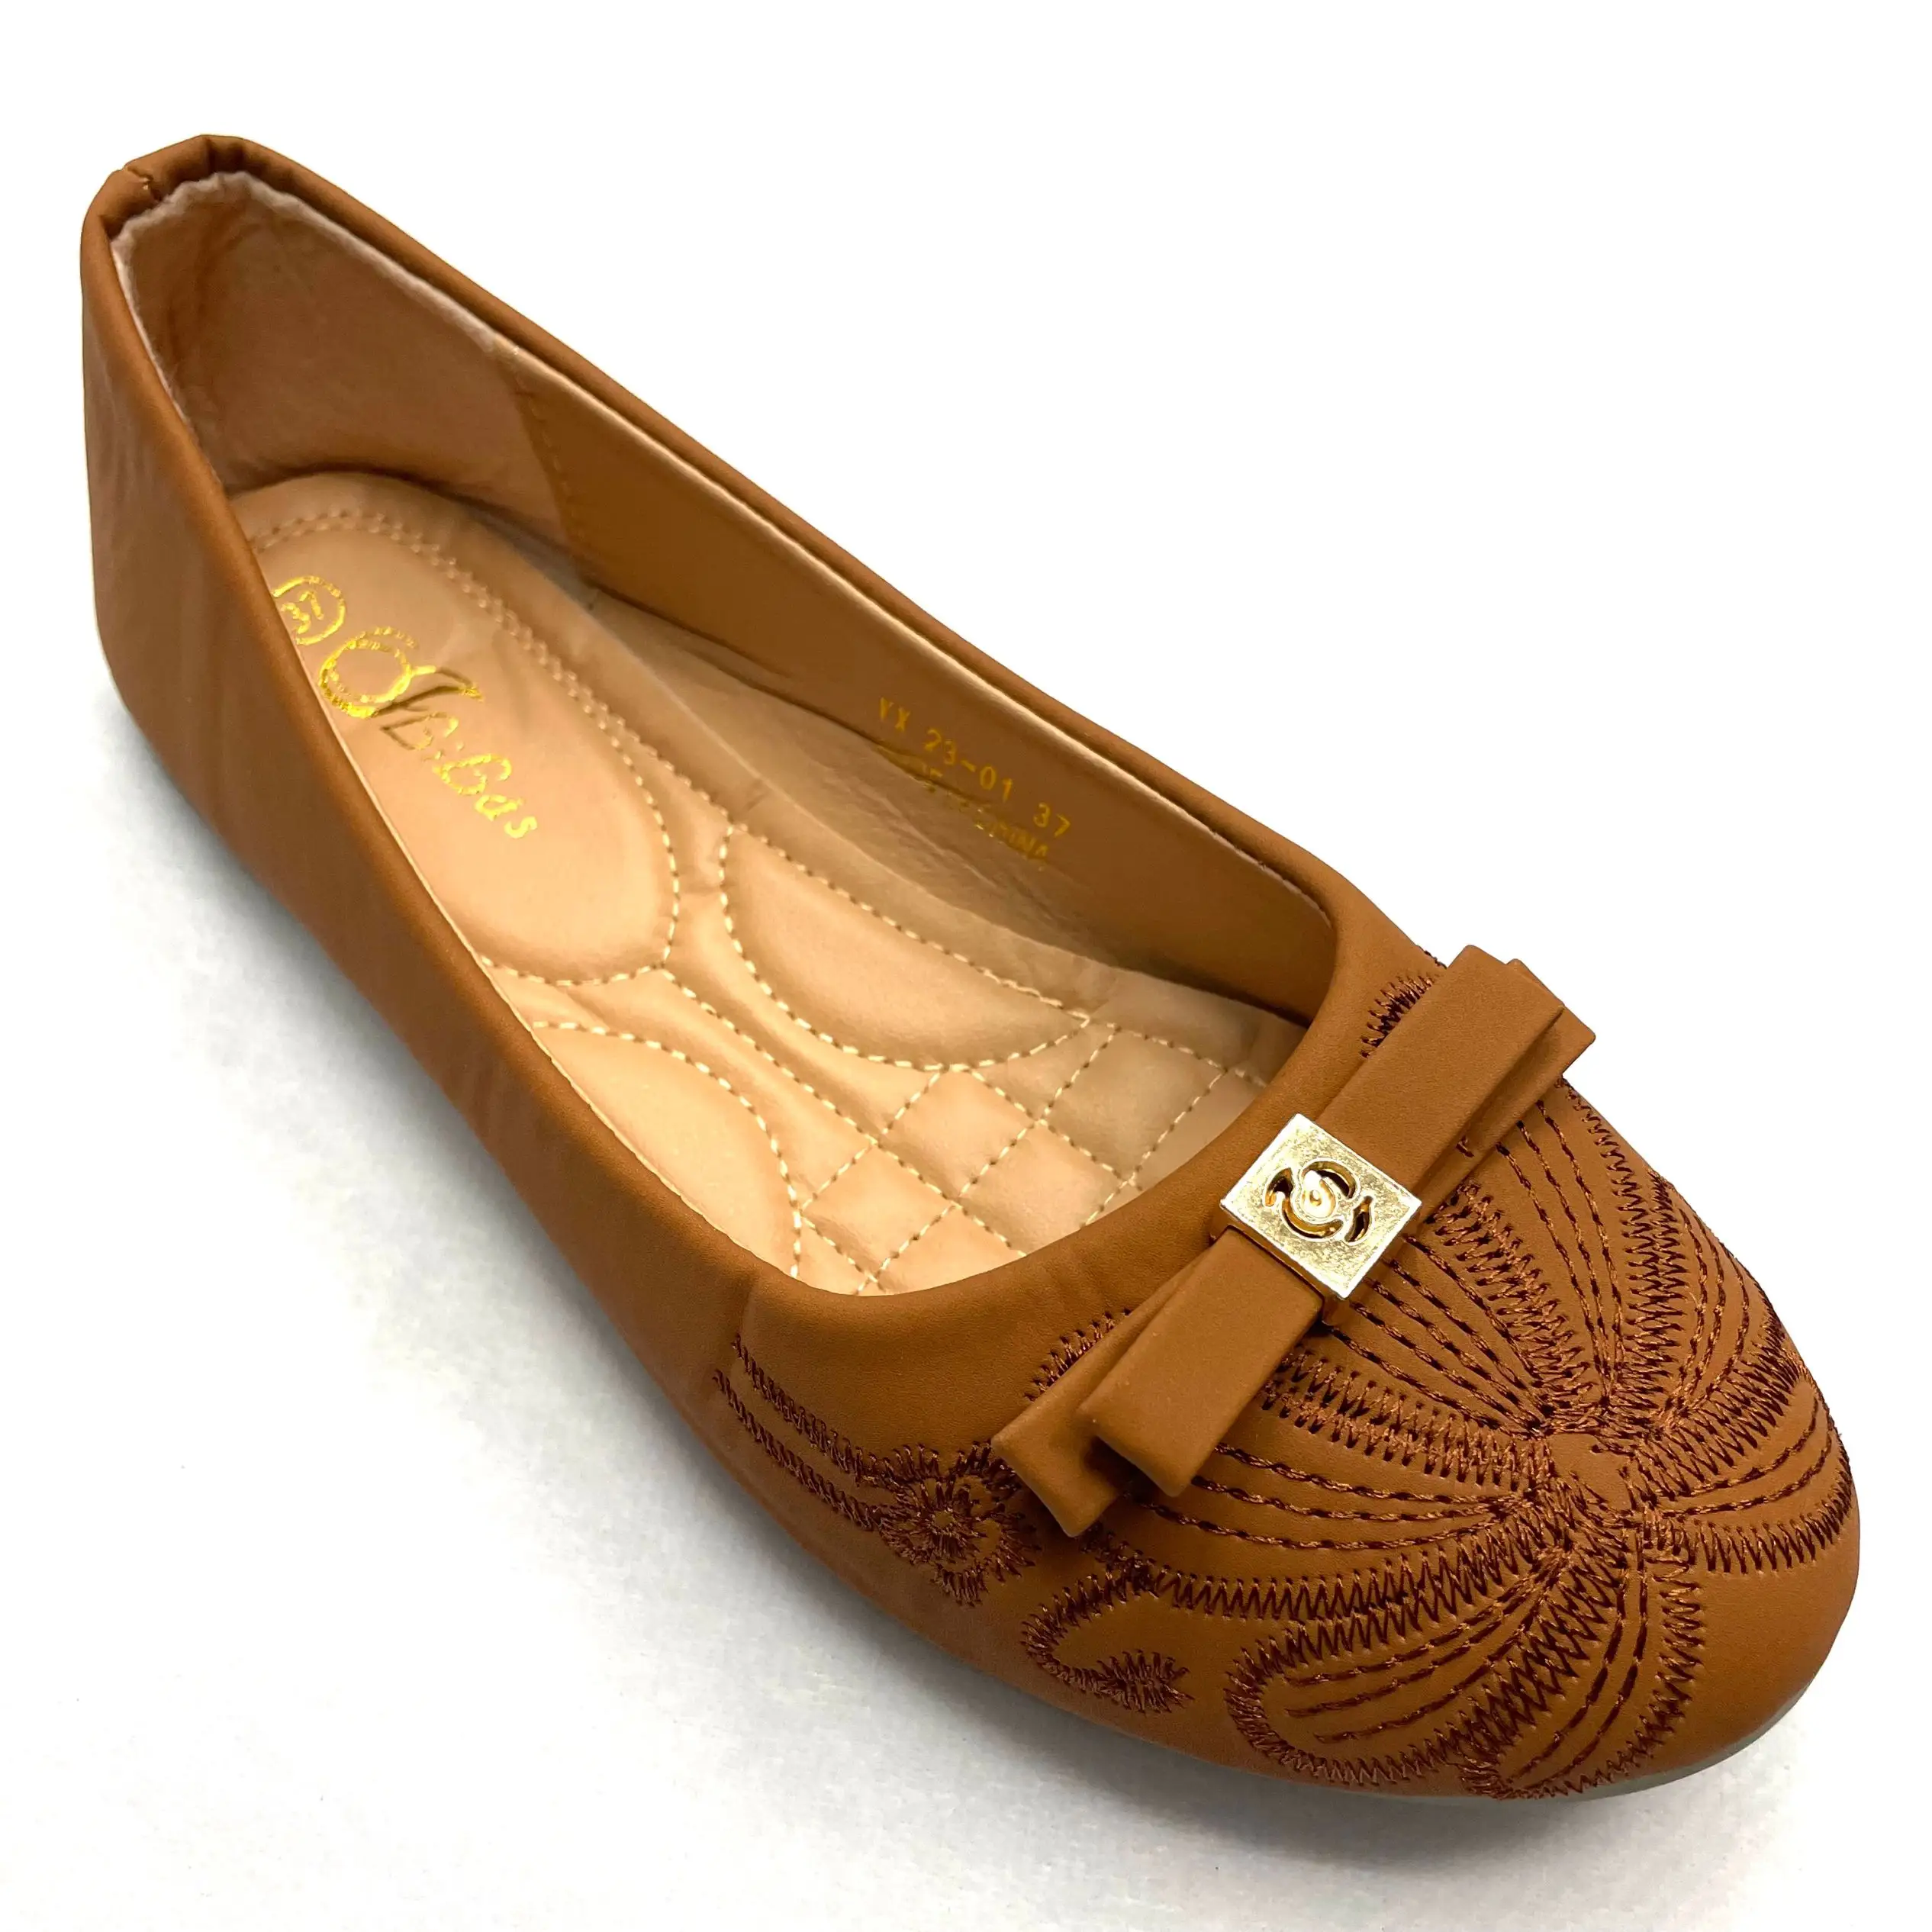 Retro leopardo impressão sapatos das mulheres arco plana beanie sapatos ins vento fundo macio bombas sapatos das mulheres